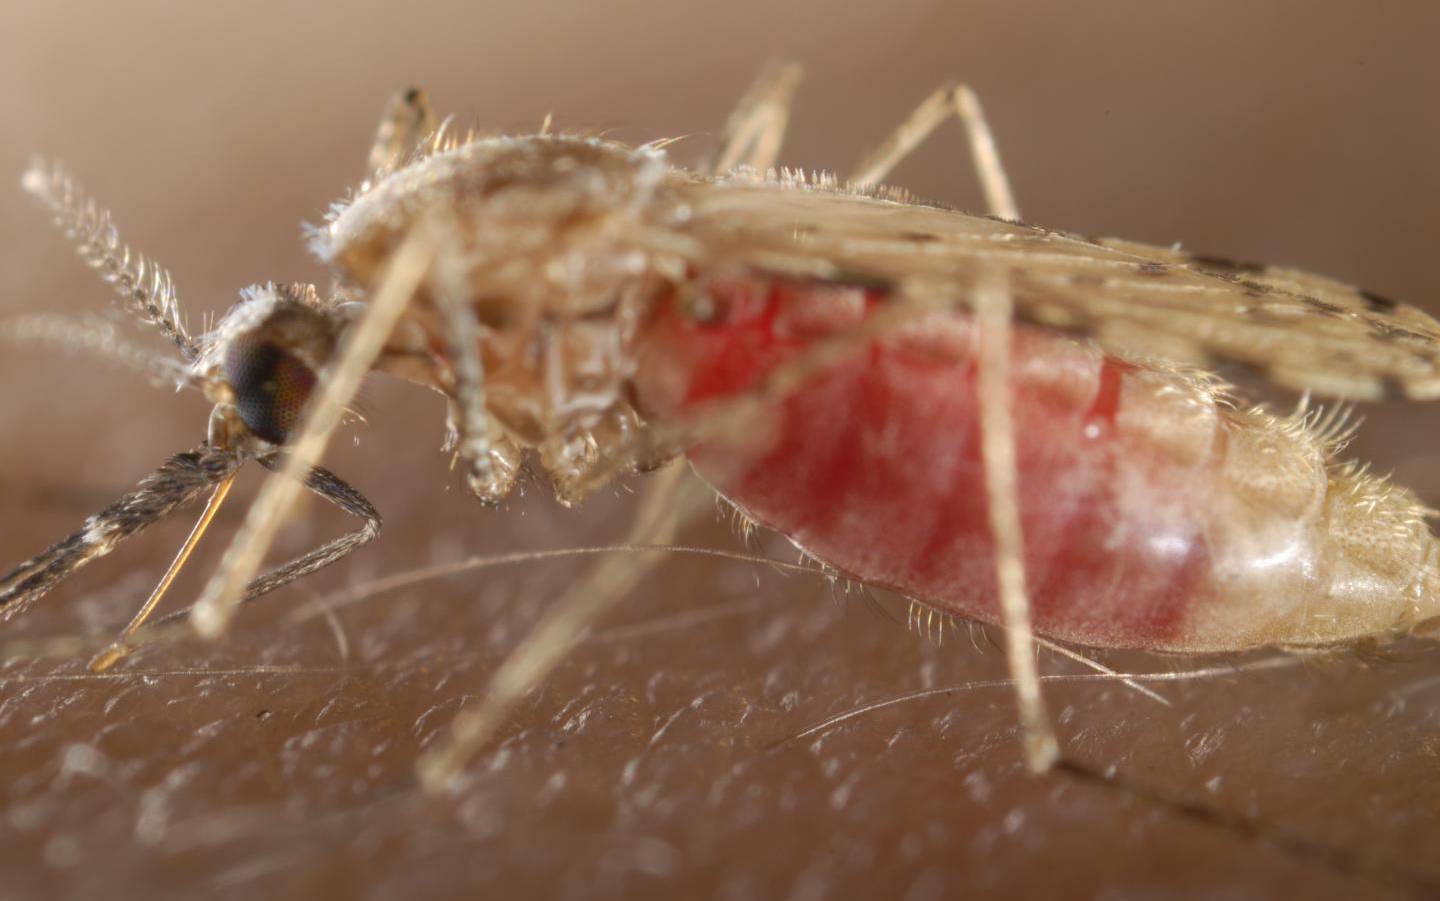 Осторожно: малярийный комар